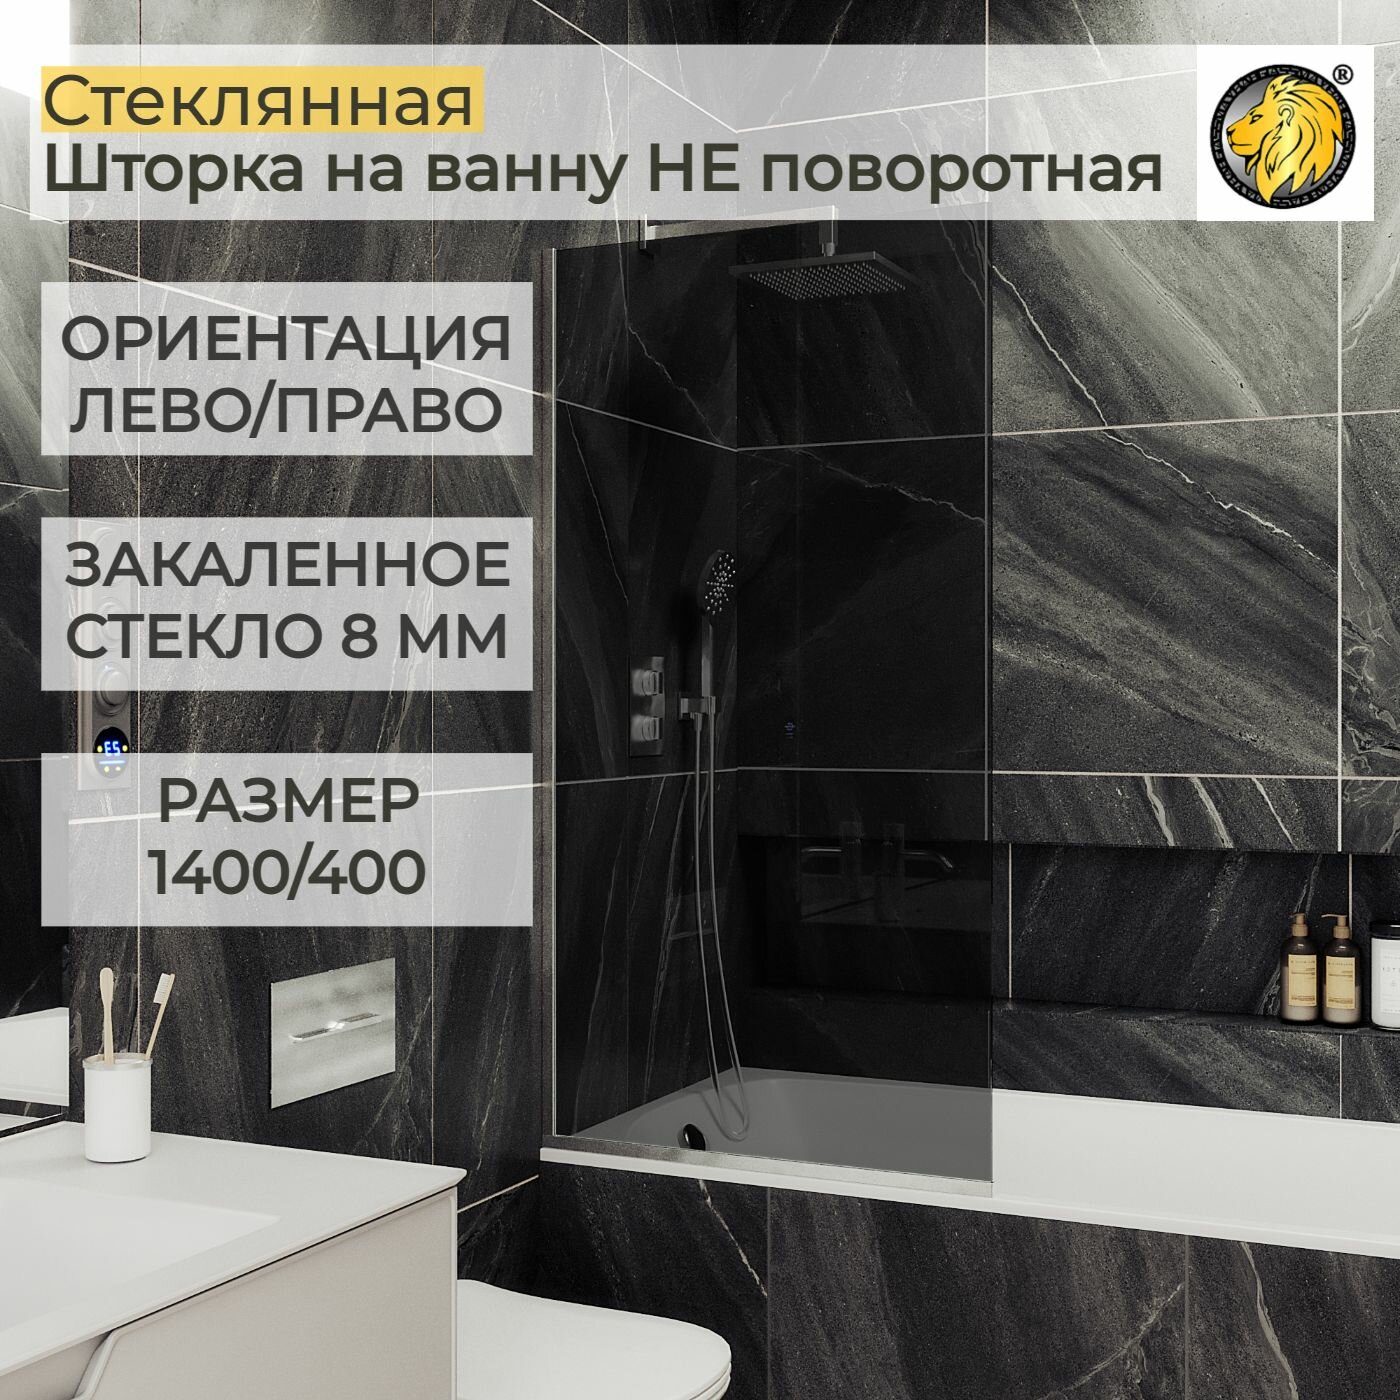 Стеклянная душевая шторка для ванной 8 мм 1400/400 (УП) MaybahGlass стекло графит профиль хром матовый